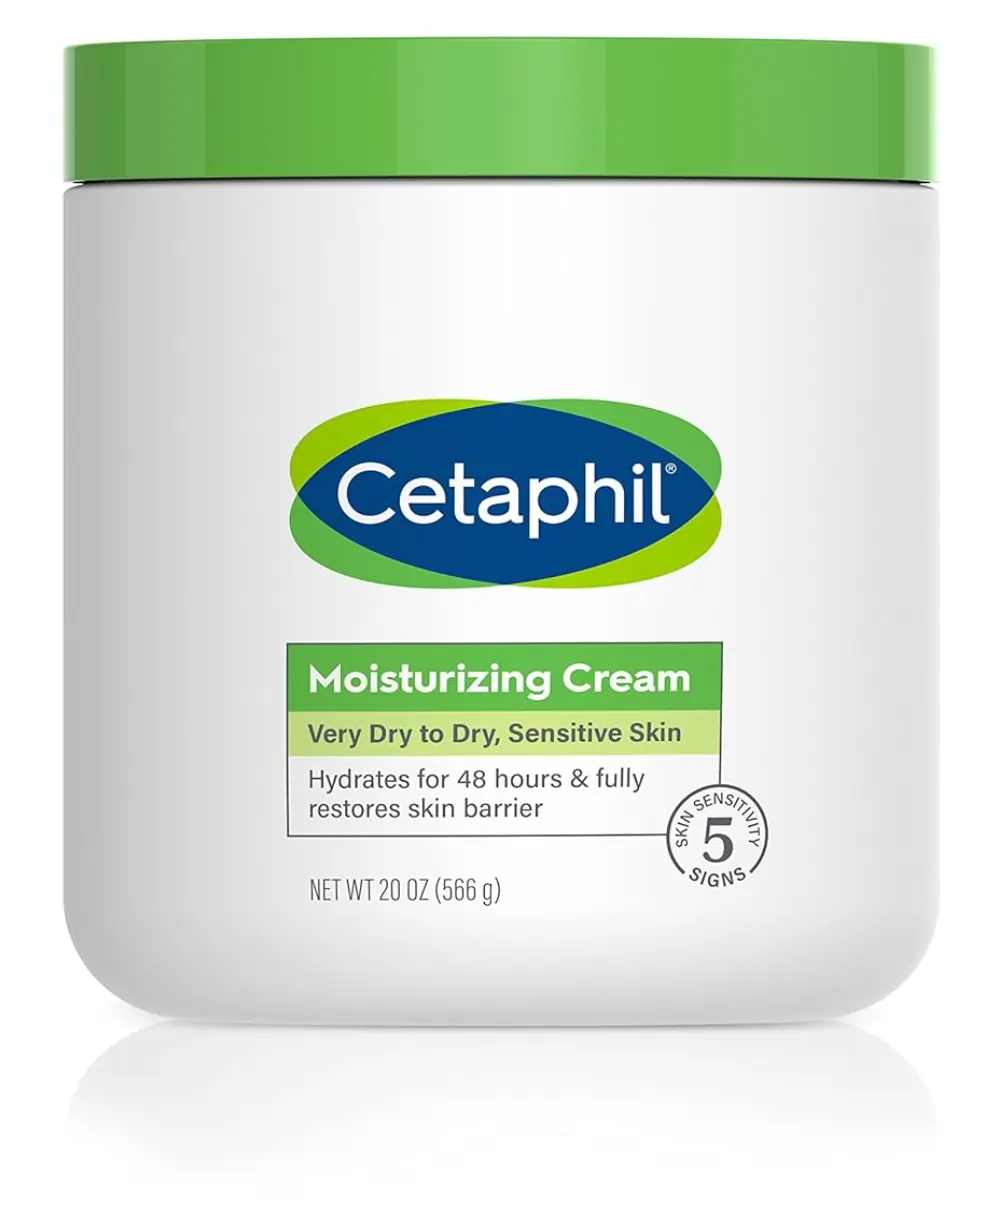 FEMMENORDIC's choice in the Cetaphil vs Vanicream comparison, Cetaphil Moisturizing Cream